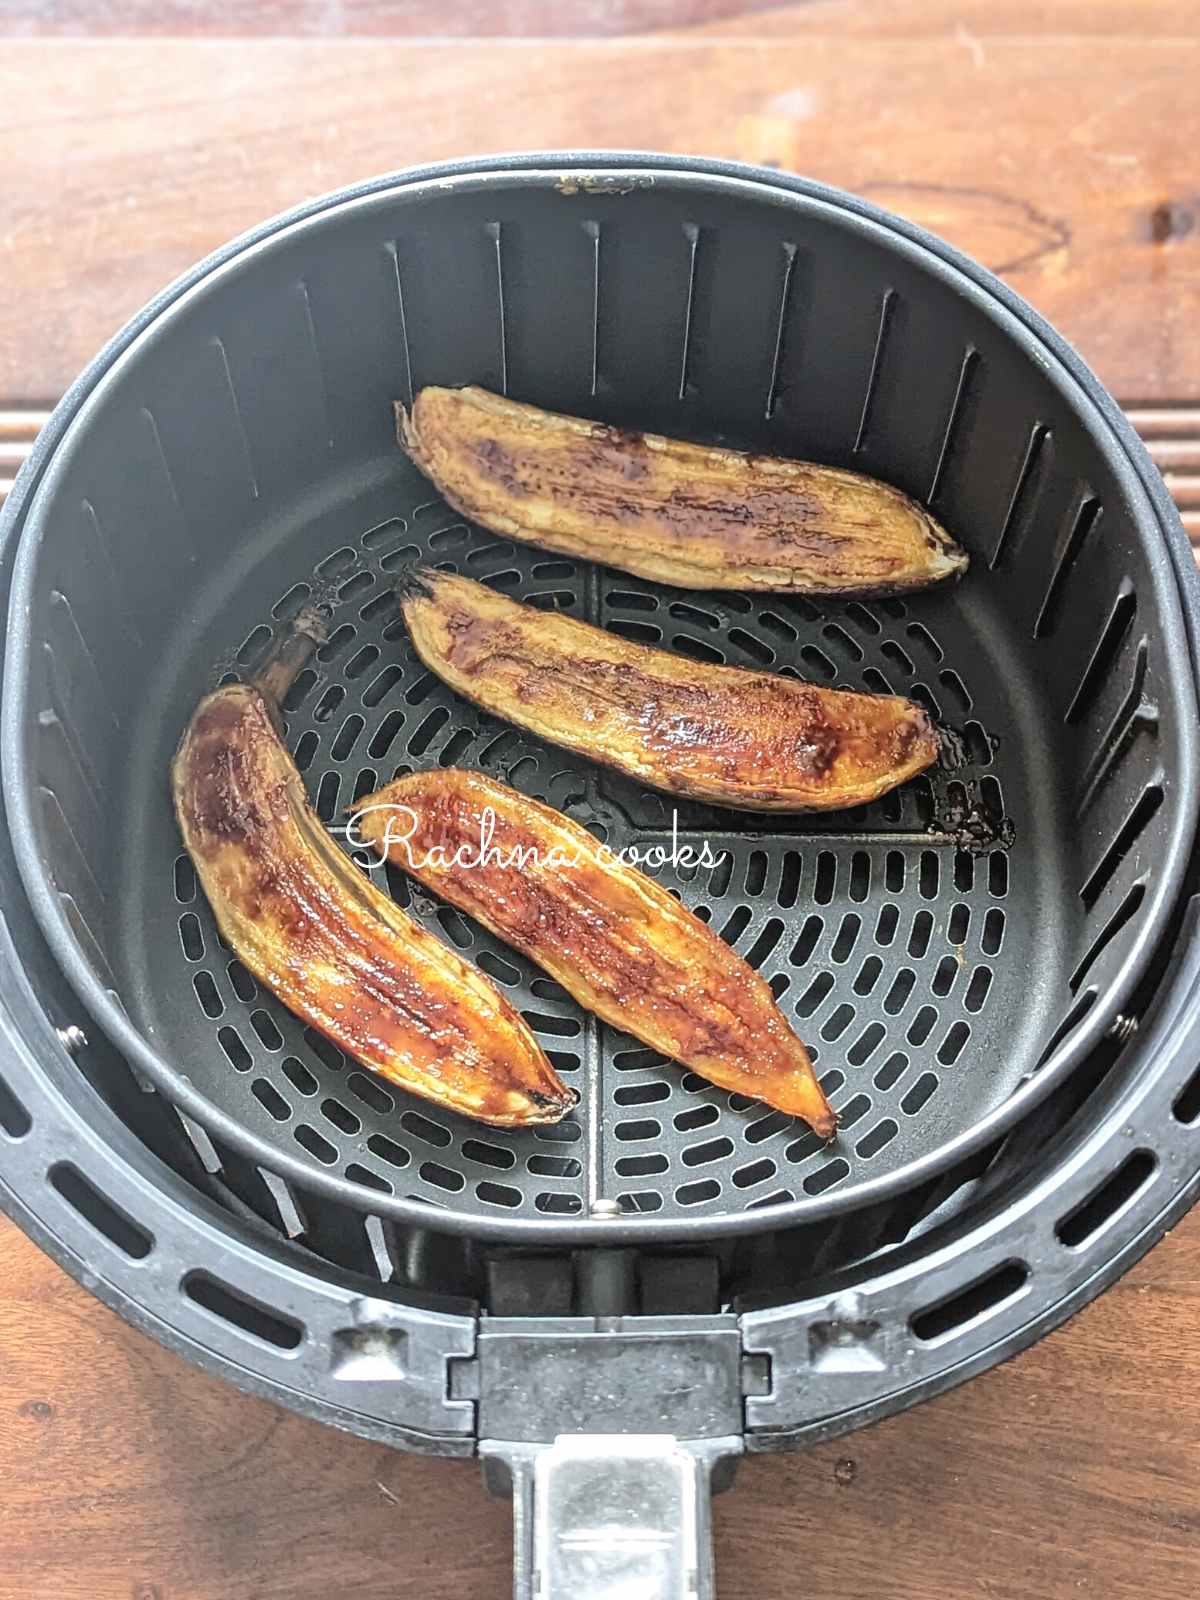 4 caramelized banana halves in air fryer basket